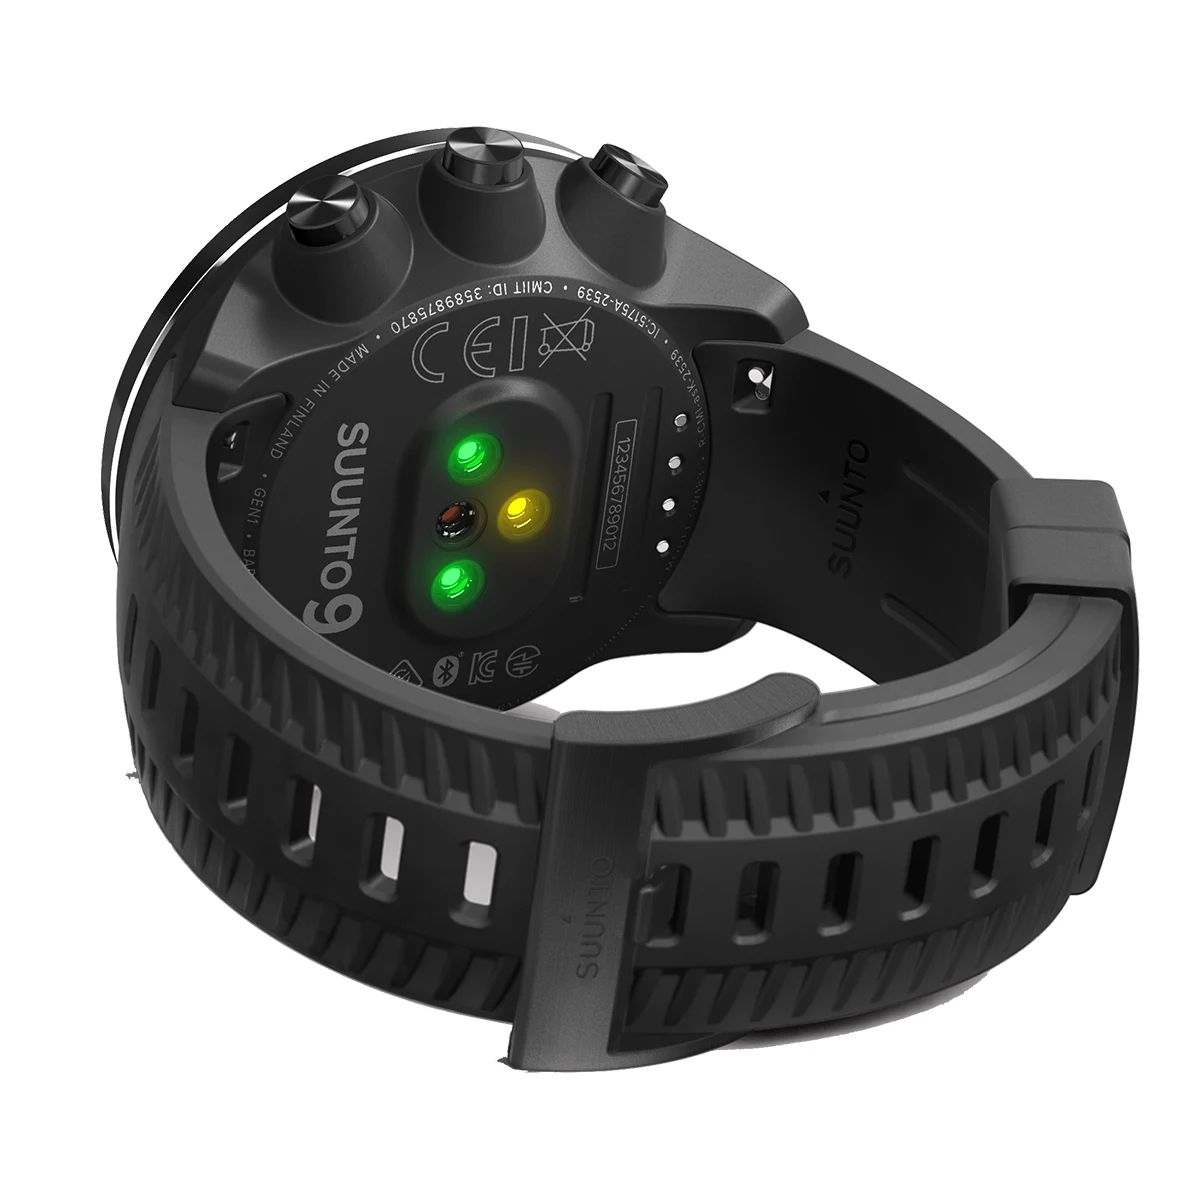 Suunto 9 Baro Smart Watch, 35mm, Running, Barometer, GPS, Water